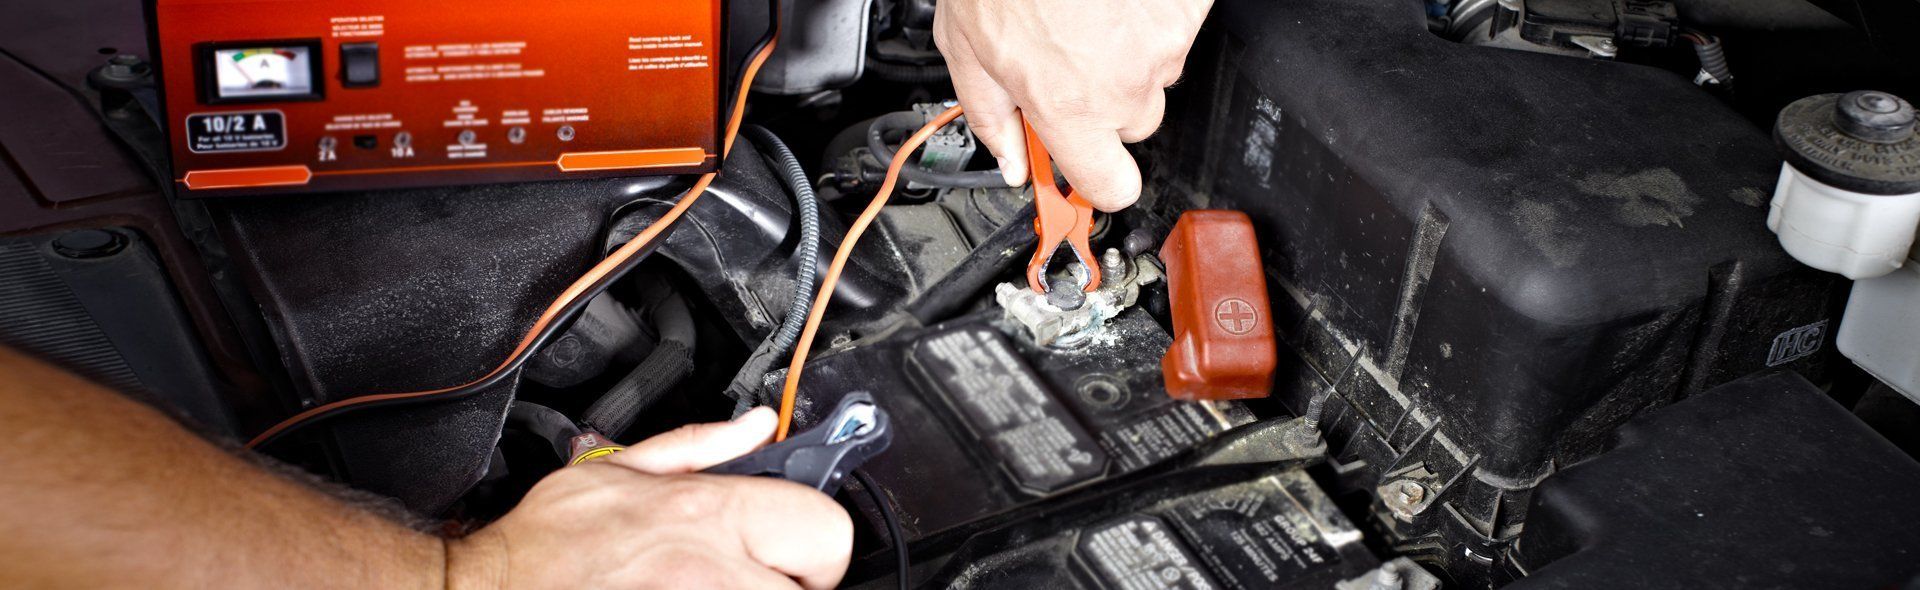 electric car repairs